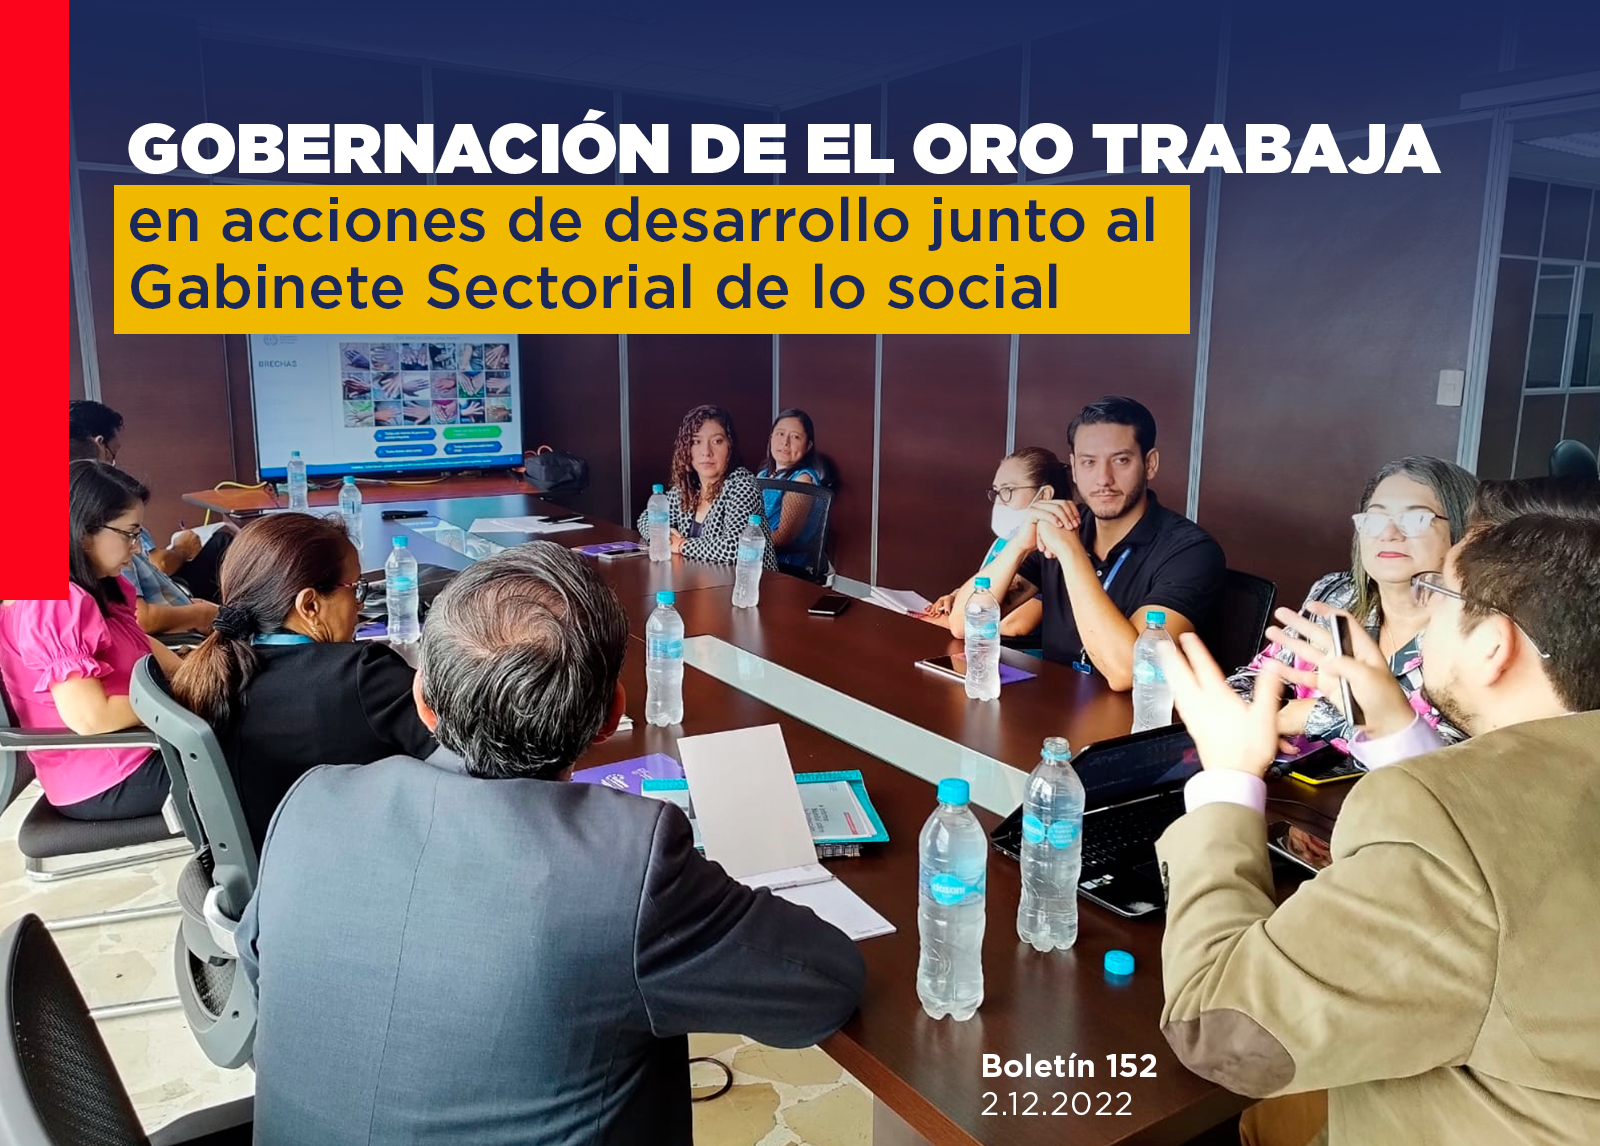 GOBERNACIÓN DE EL ORO TRABAJA EN ACCIONES DE DESARROLLO JUNTO AL GABINETE SECTORIAL DE LO SOCIAL